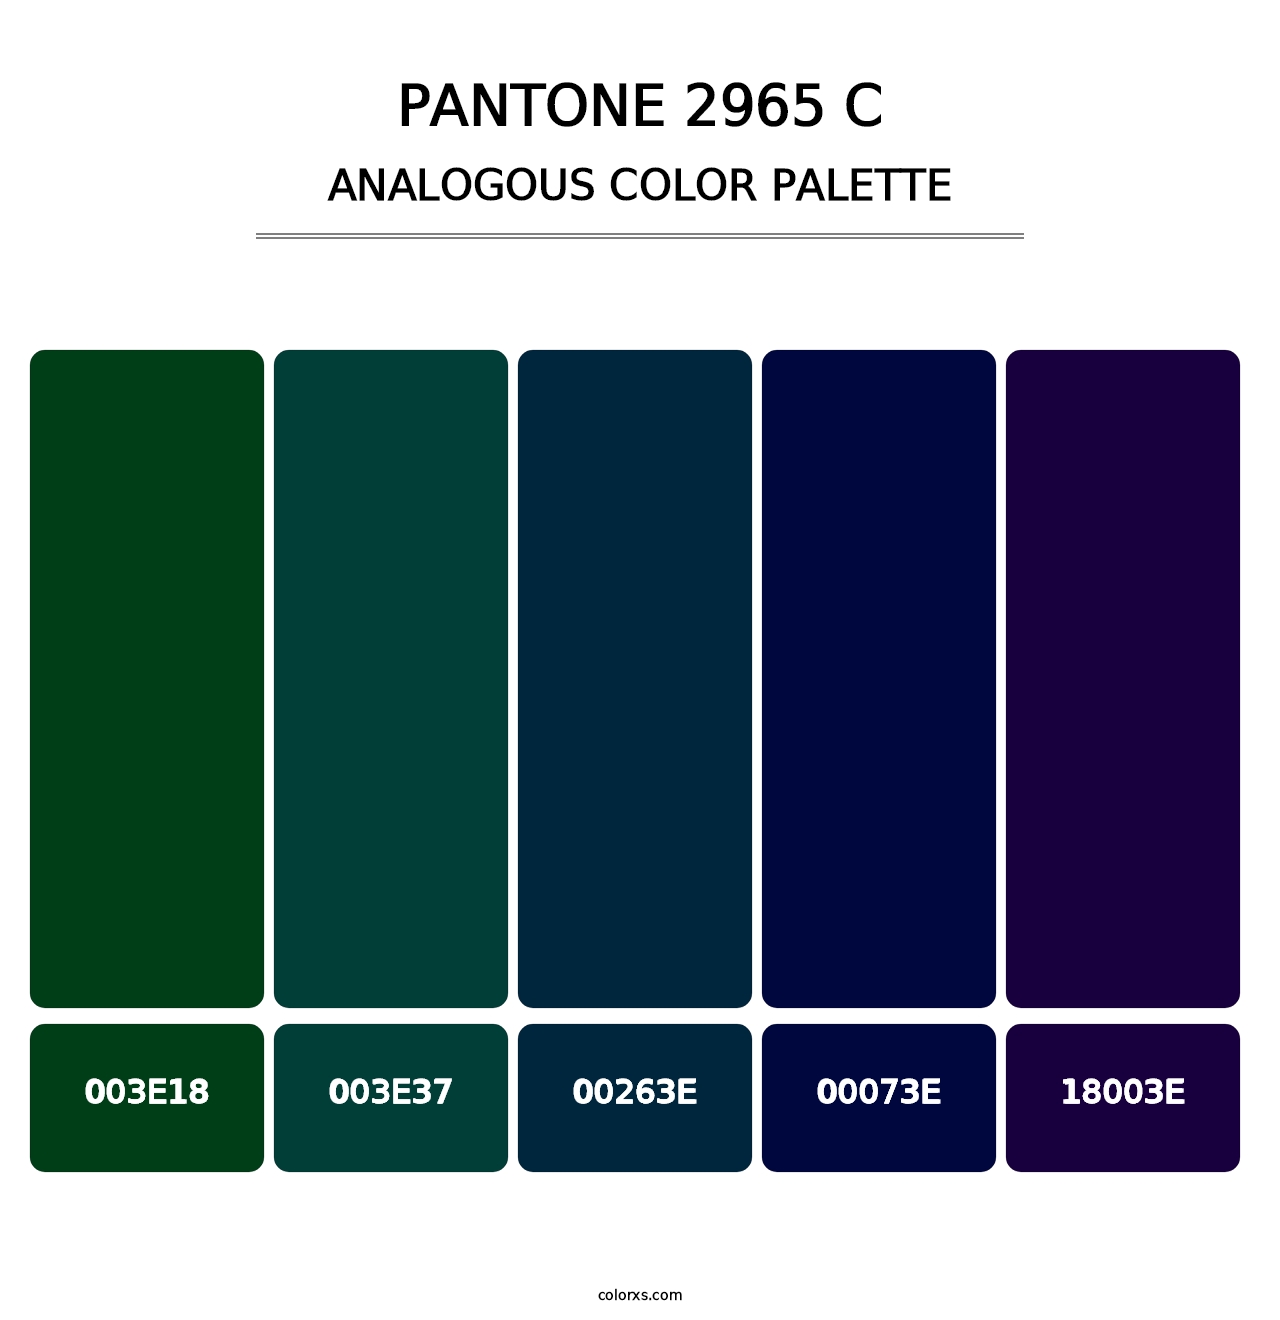 PANTONE 2965 C - Analogous Color Palette